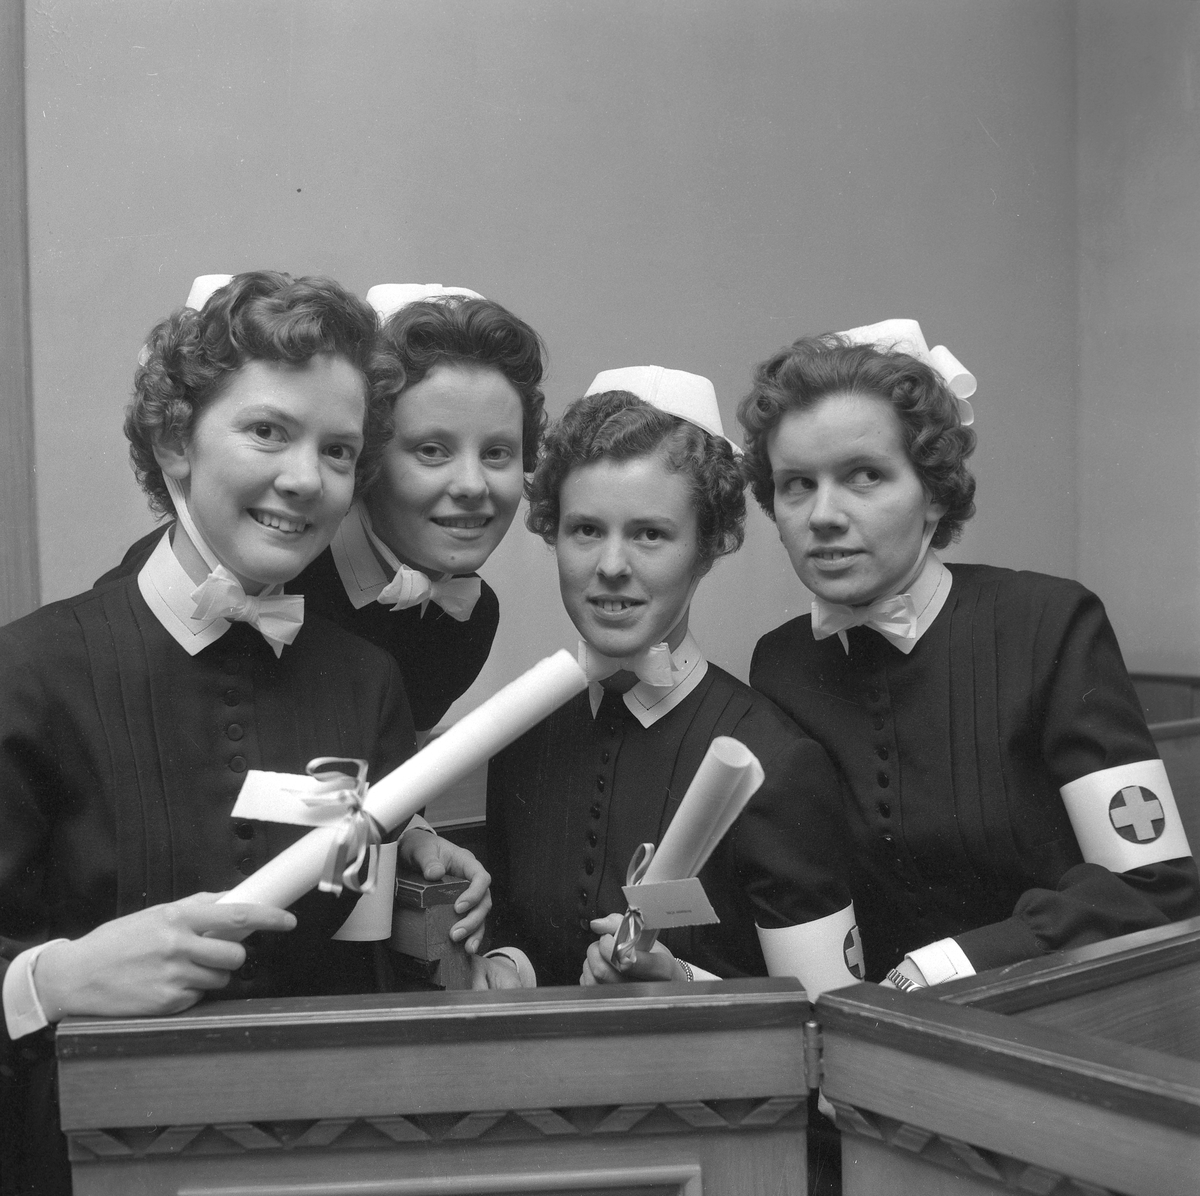 Nya sjuksköterskor.
19 december 1958.